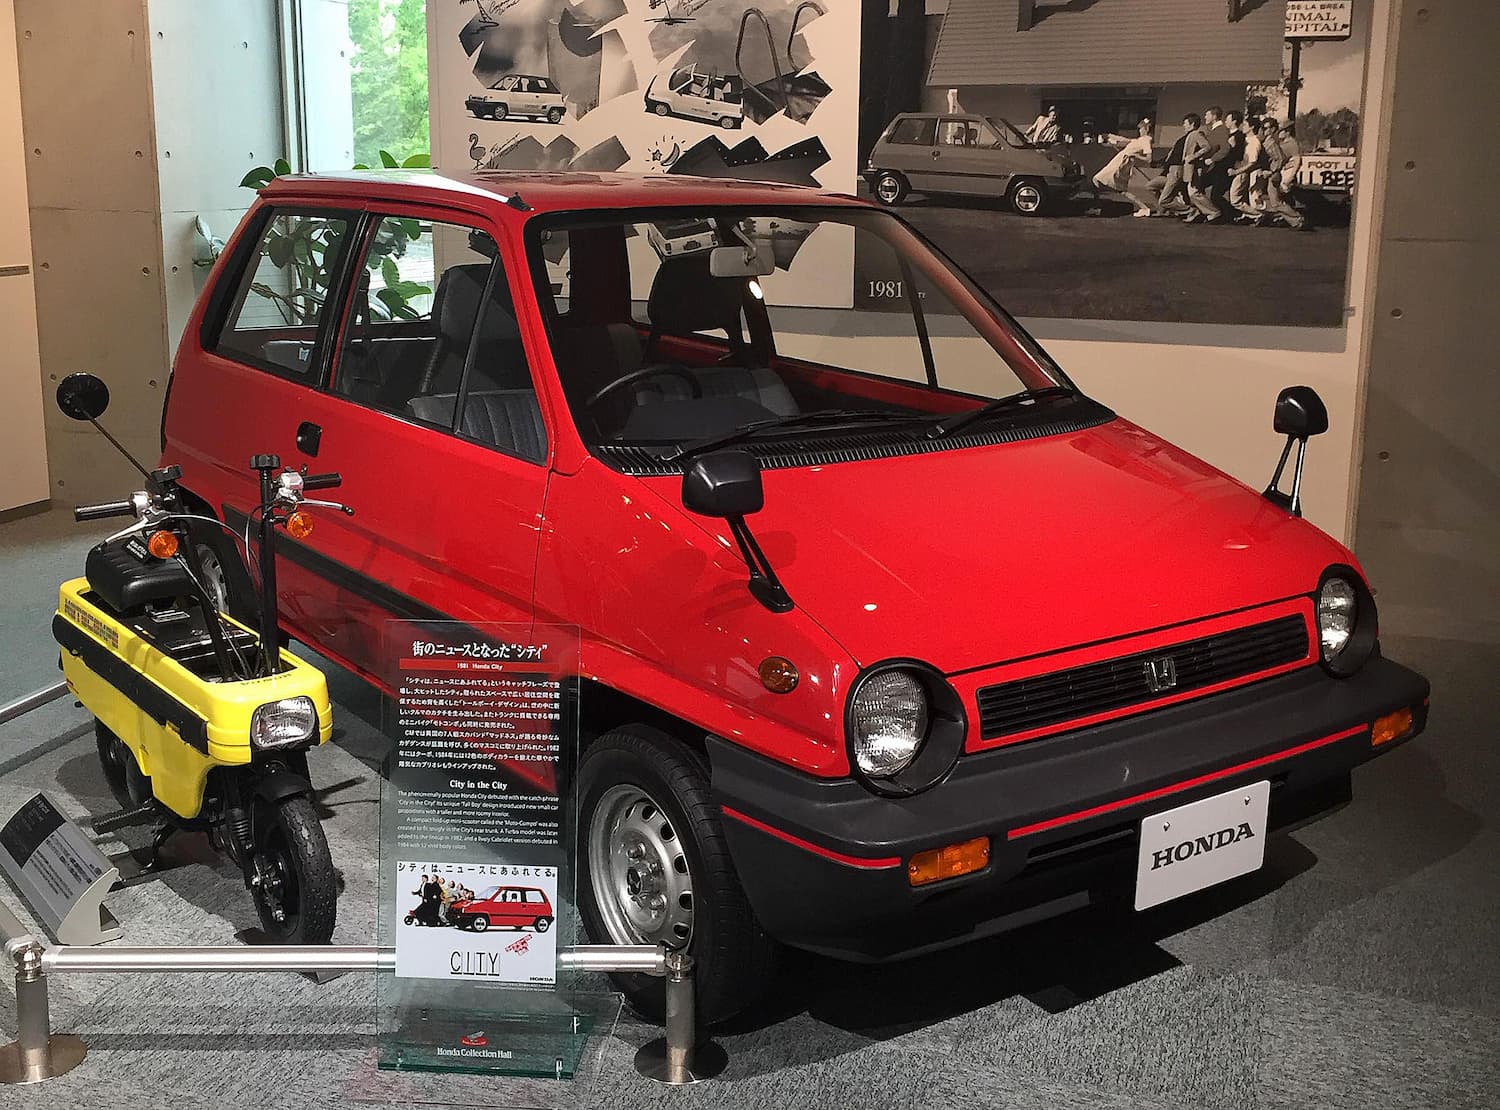 Honda_City_and_Motocompo_display_at_Honda_Collection_Hall_in_Motegi-1.jpg